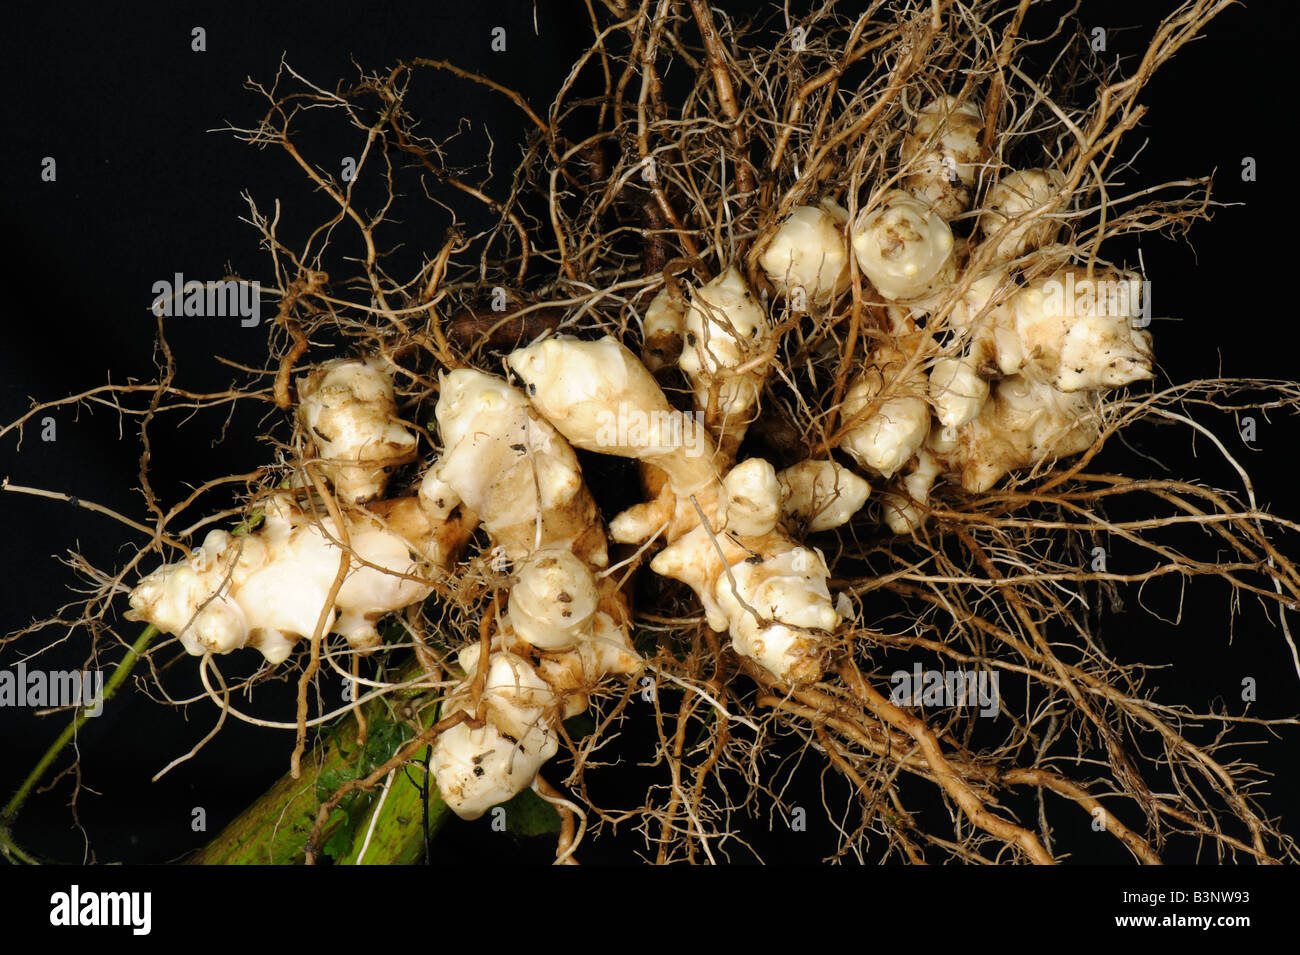 Le topinambour Helianthus tuberosus fraîchement extraits avec les jeunes racines tubercules blancs Banque D'Images